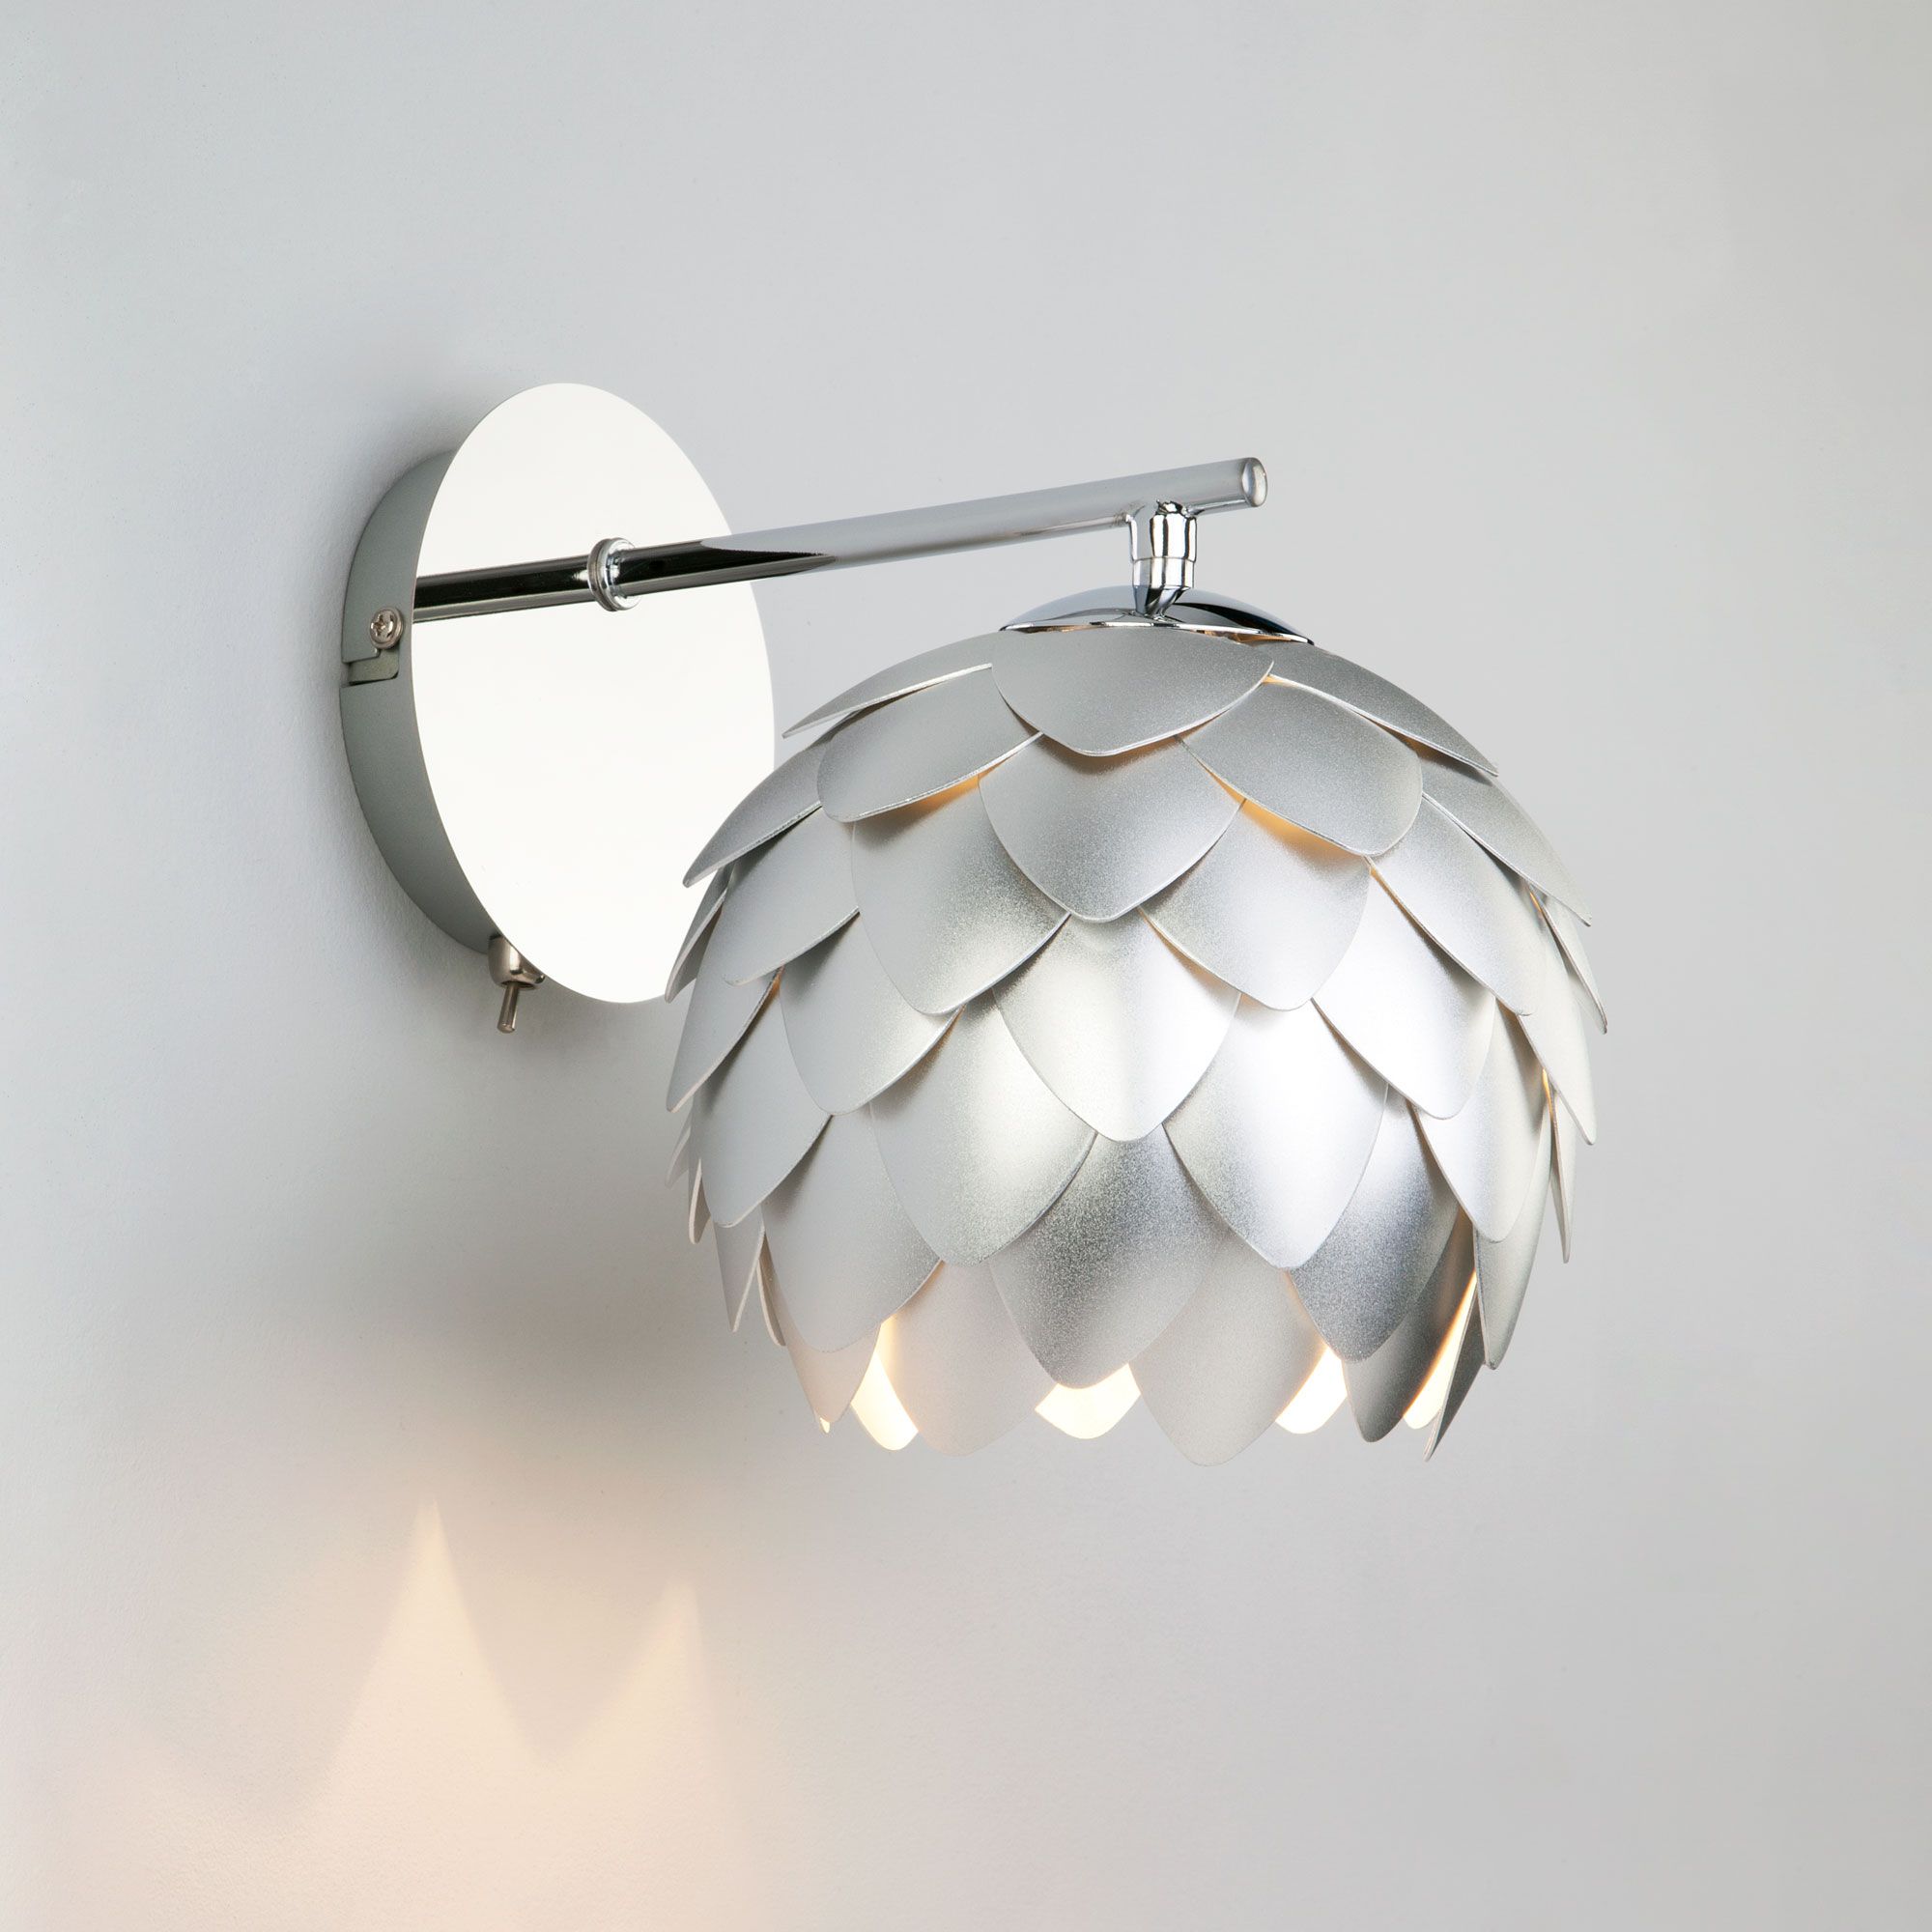 Настенный светильник с металлическим плафоном Bogate's Cedro 304 серебро / хром. Фото 1